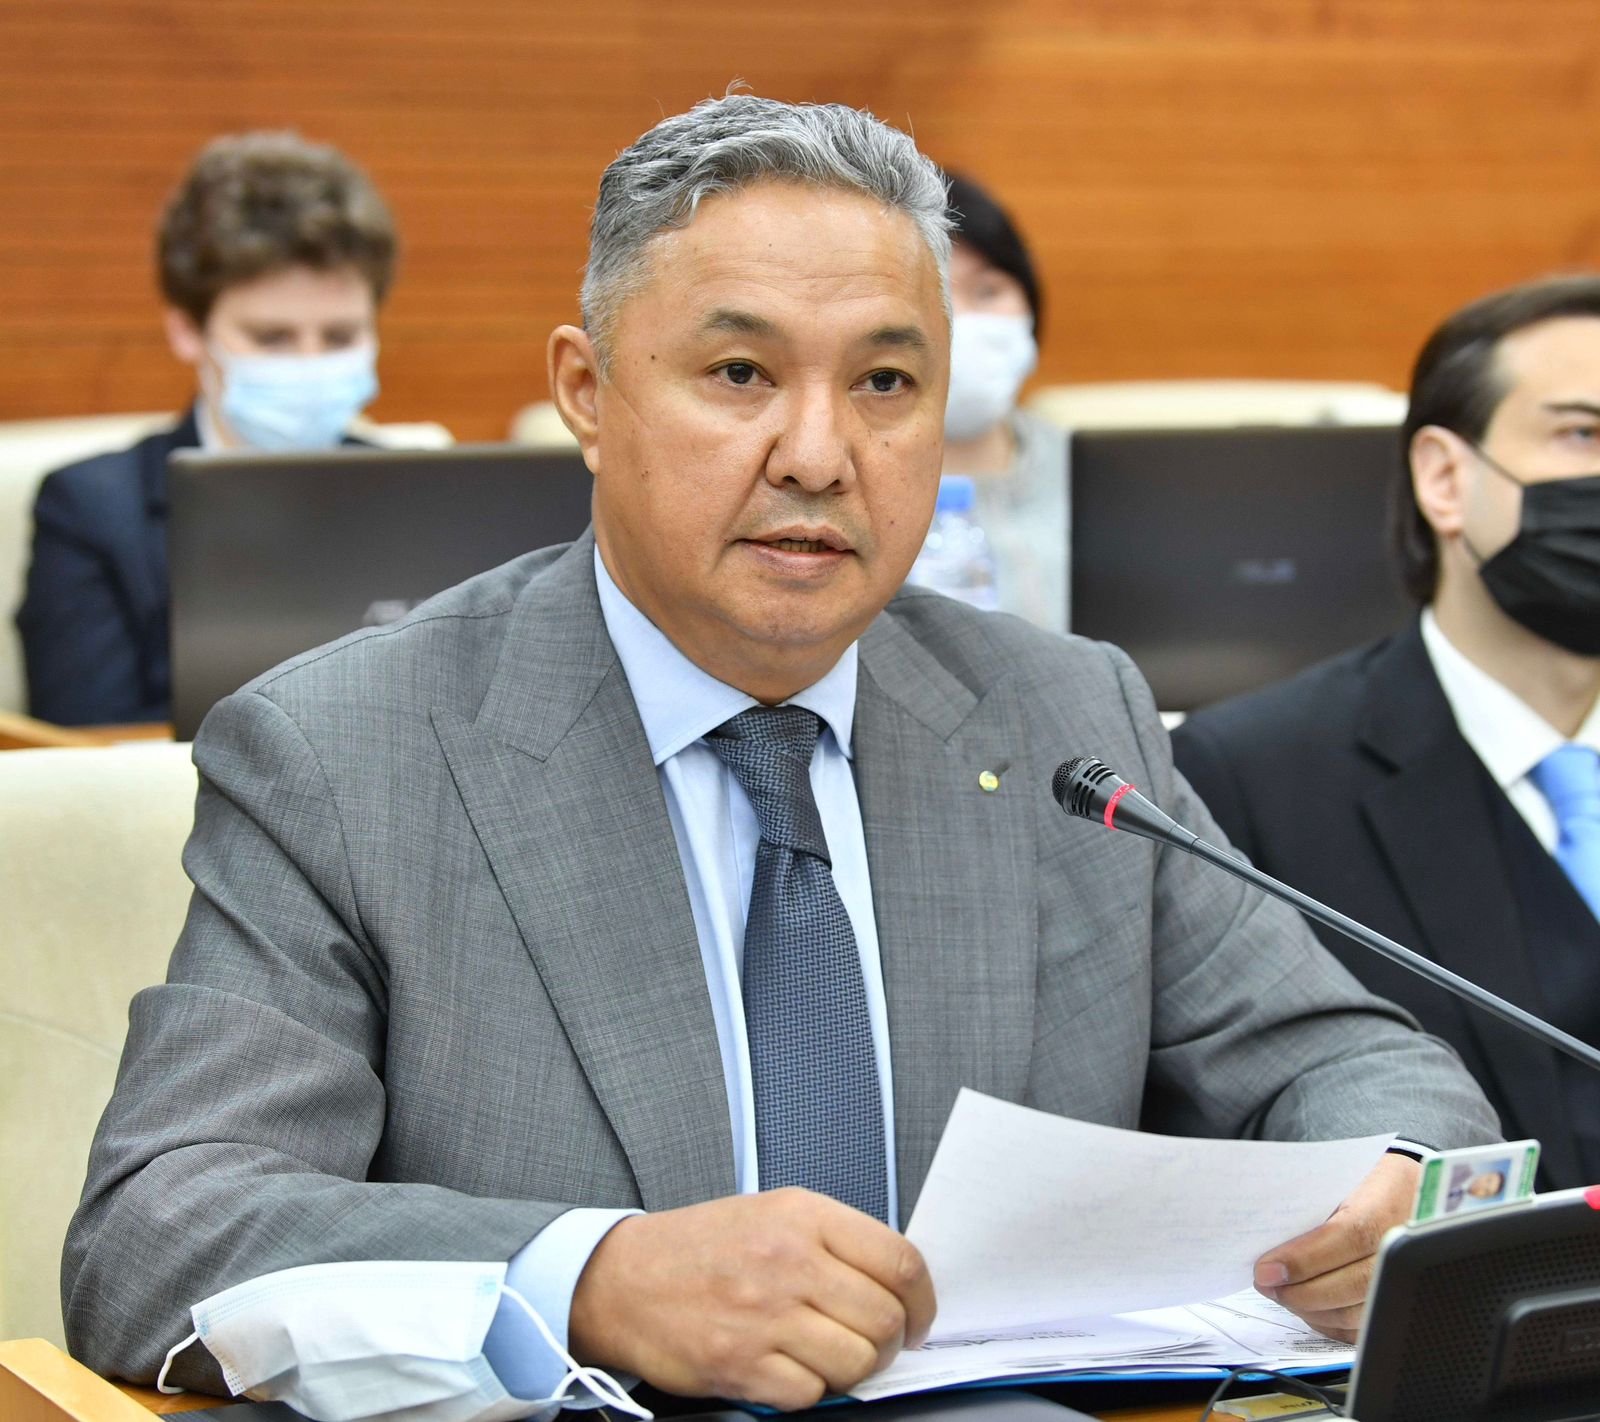 Анализируя сегодняшние поручения президента по сейсмобезопасности Алматы, можно выделить ряд моментов